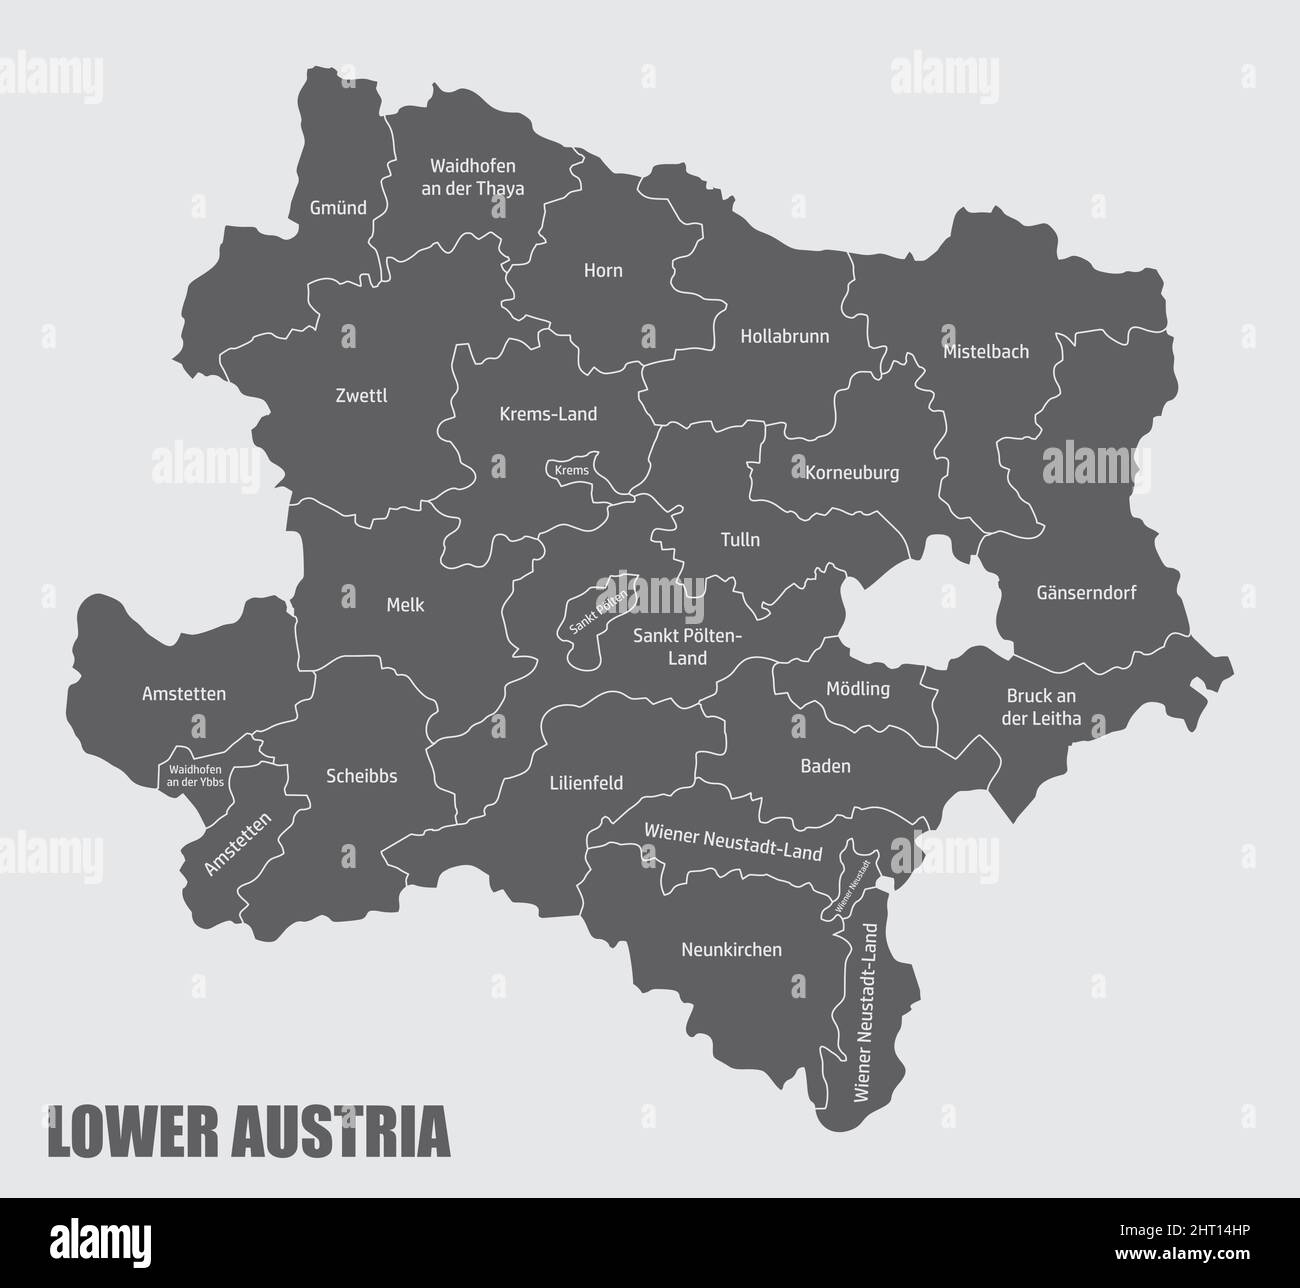 Das Land Niederösterreich. Verwaltungskarte mit Beschriftungen. Stock Vektor